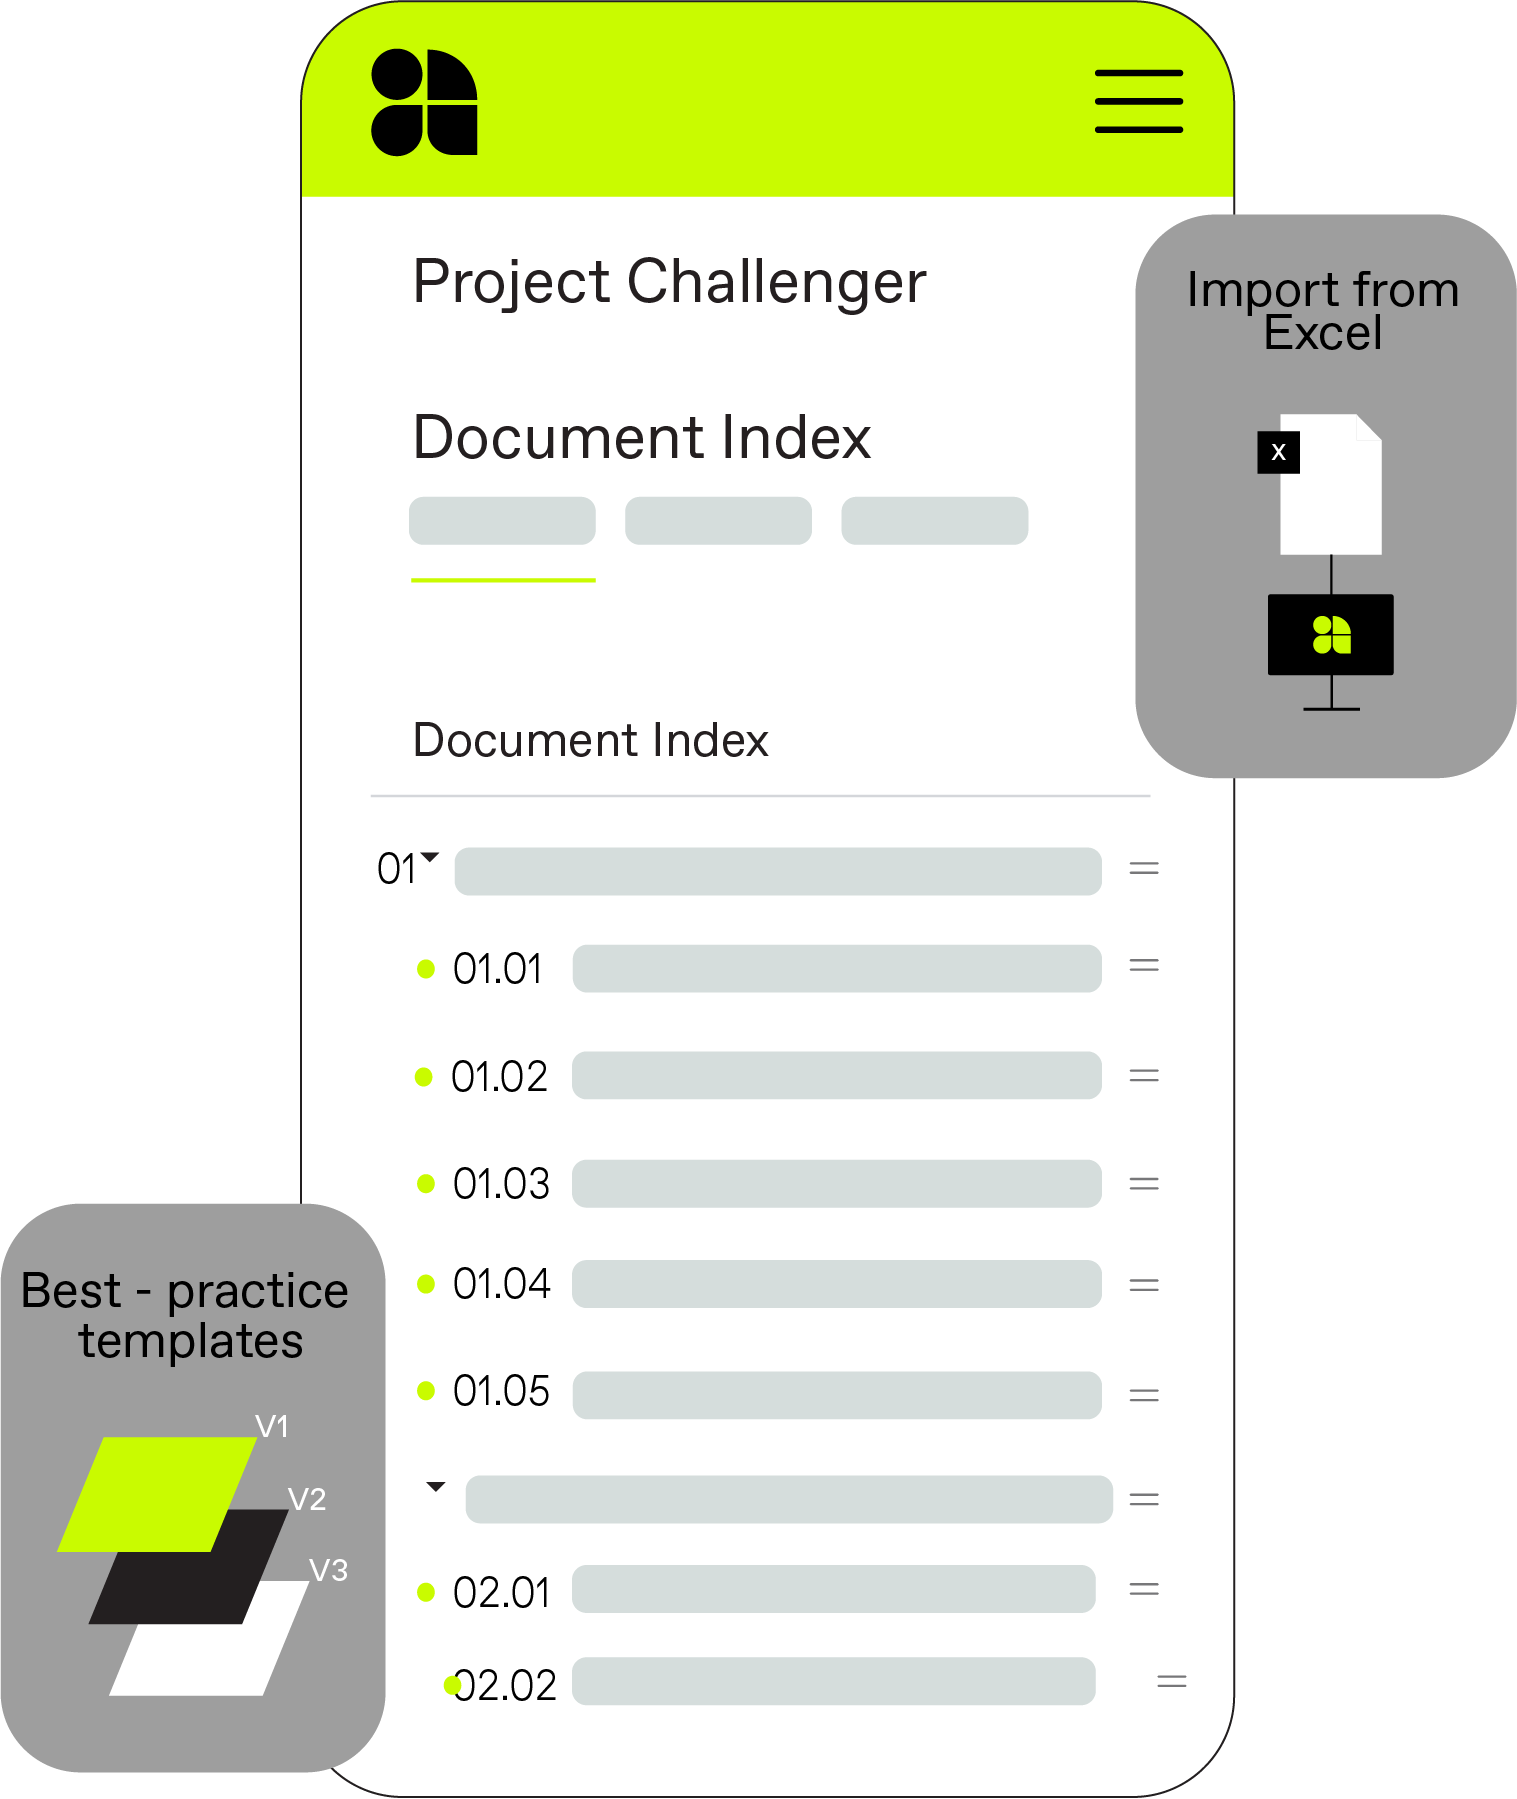 Templatized document index